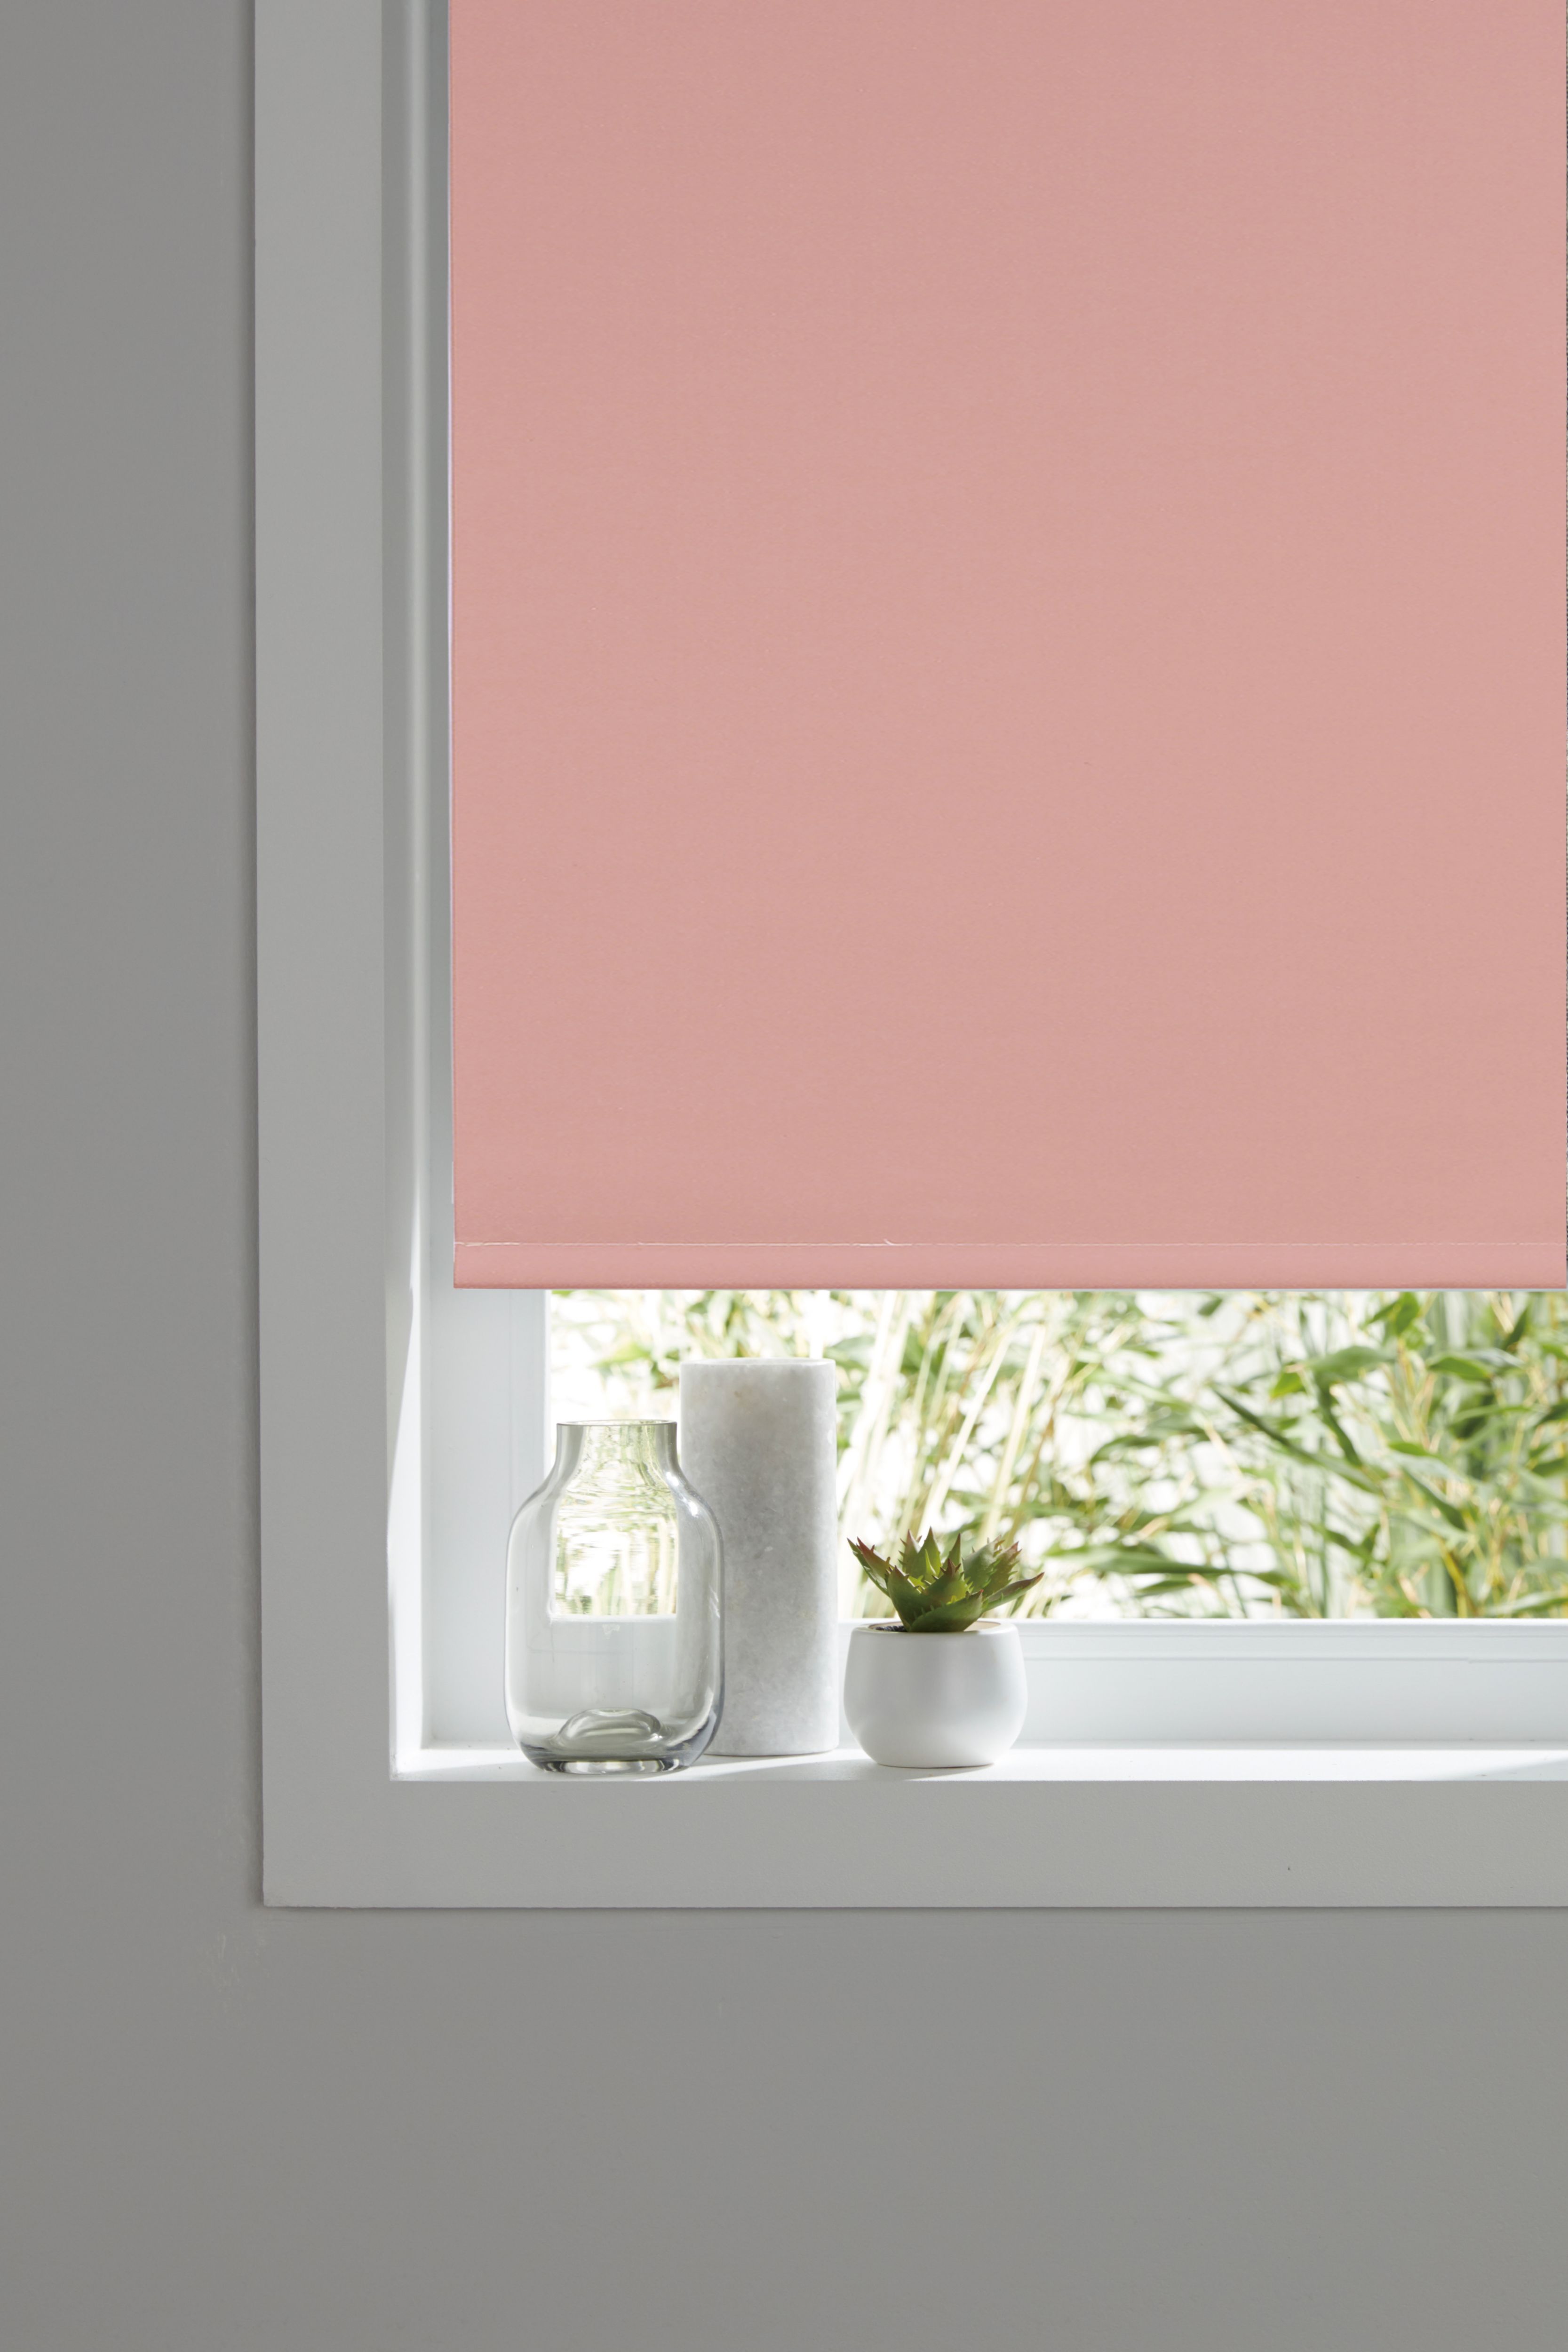 Boreas Corded Pink Plain Blackout Roller blind (W)120cm (L)180cm